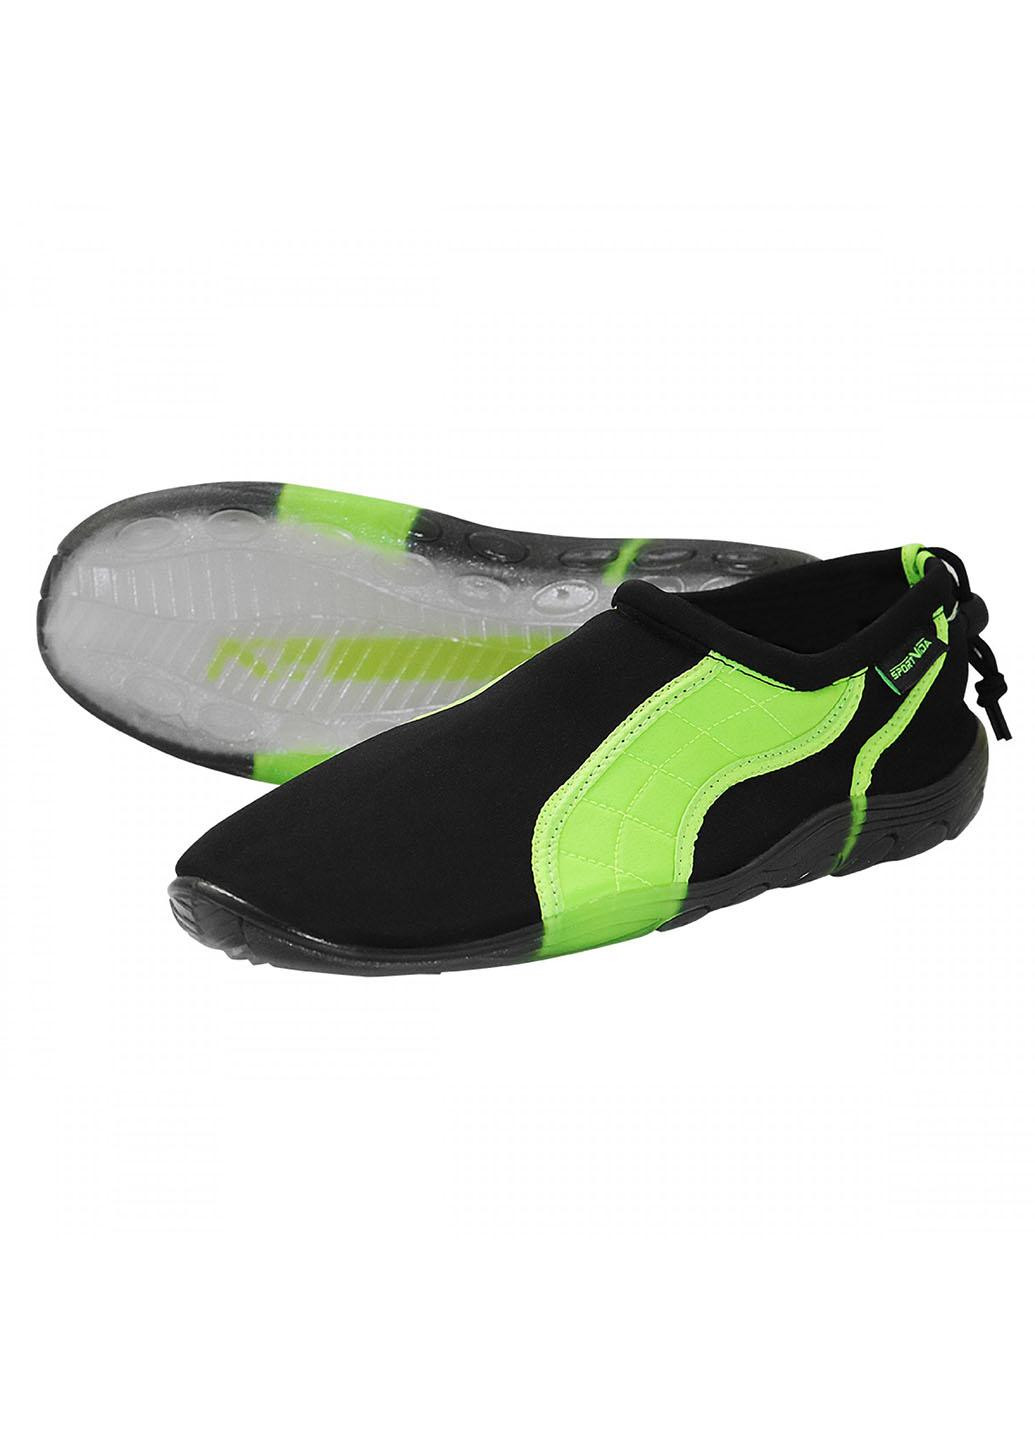 Обувь для пляжа и кораллов (аквашузы) SV-GY0004-R43 Size 43 Black/Green SportVida (258486771)